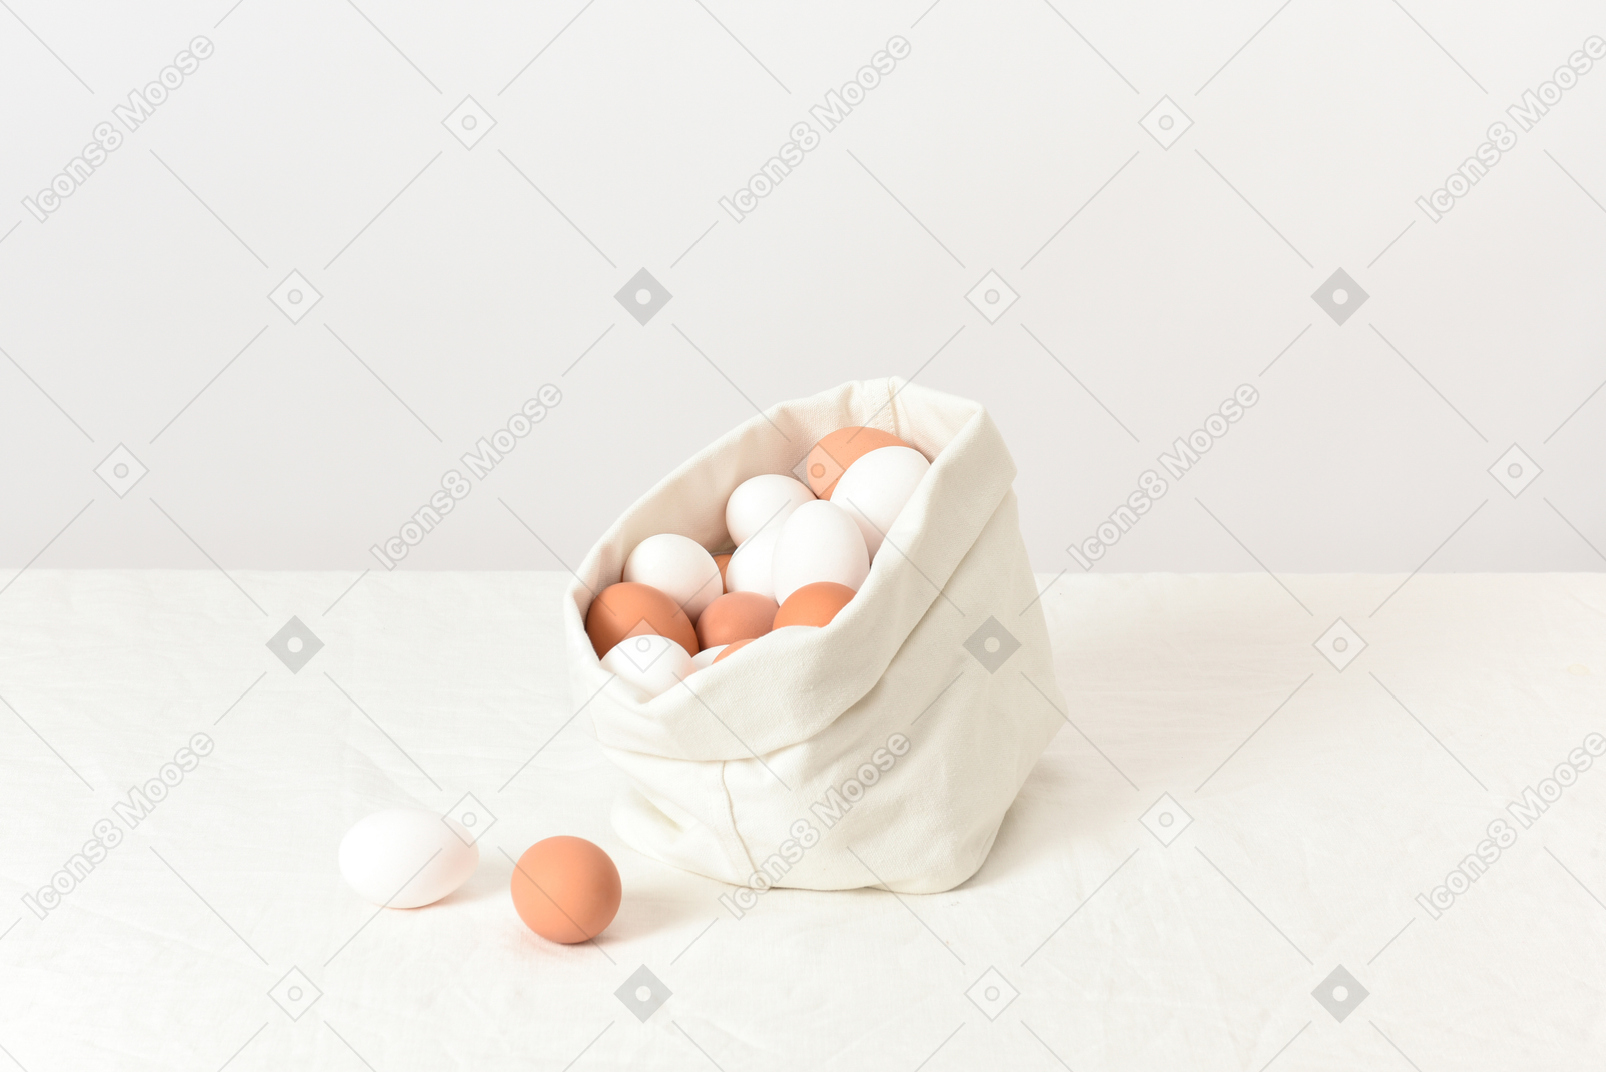 Sacchetto di lino con uova di gallina